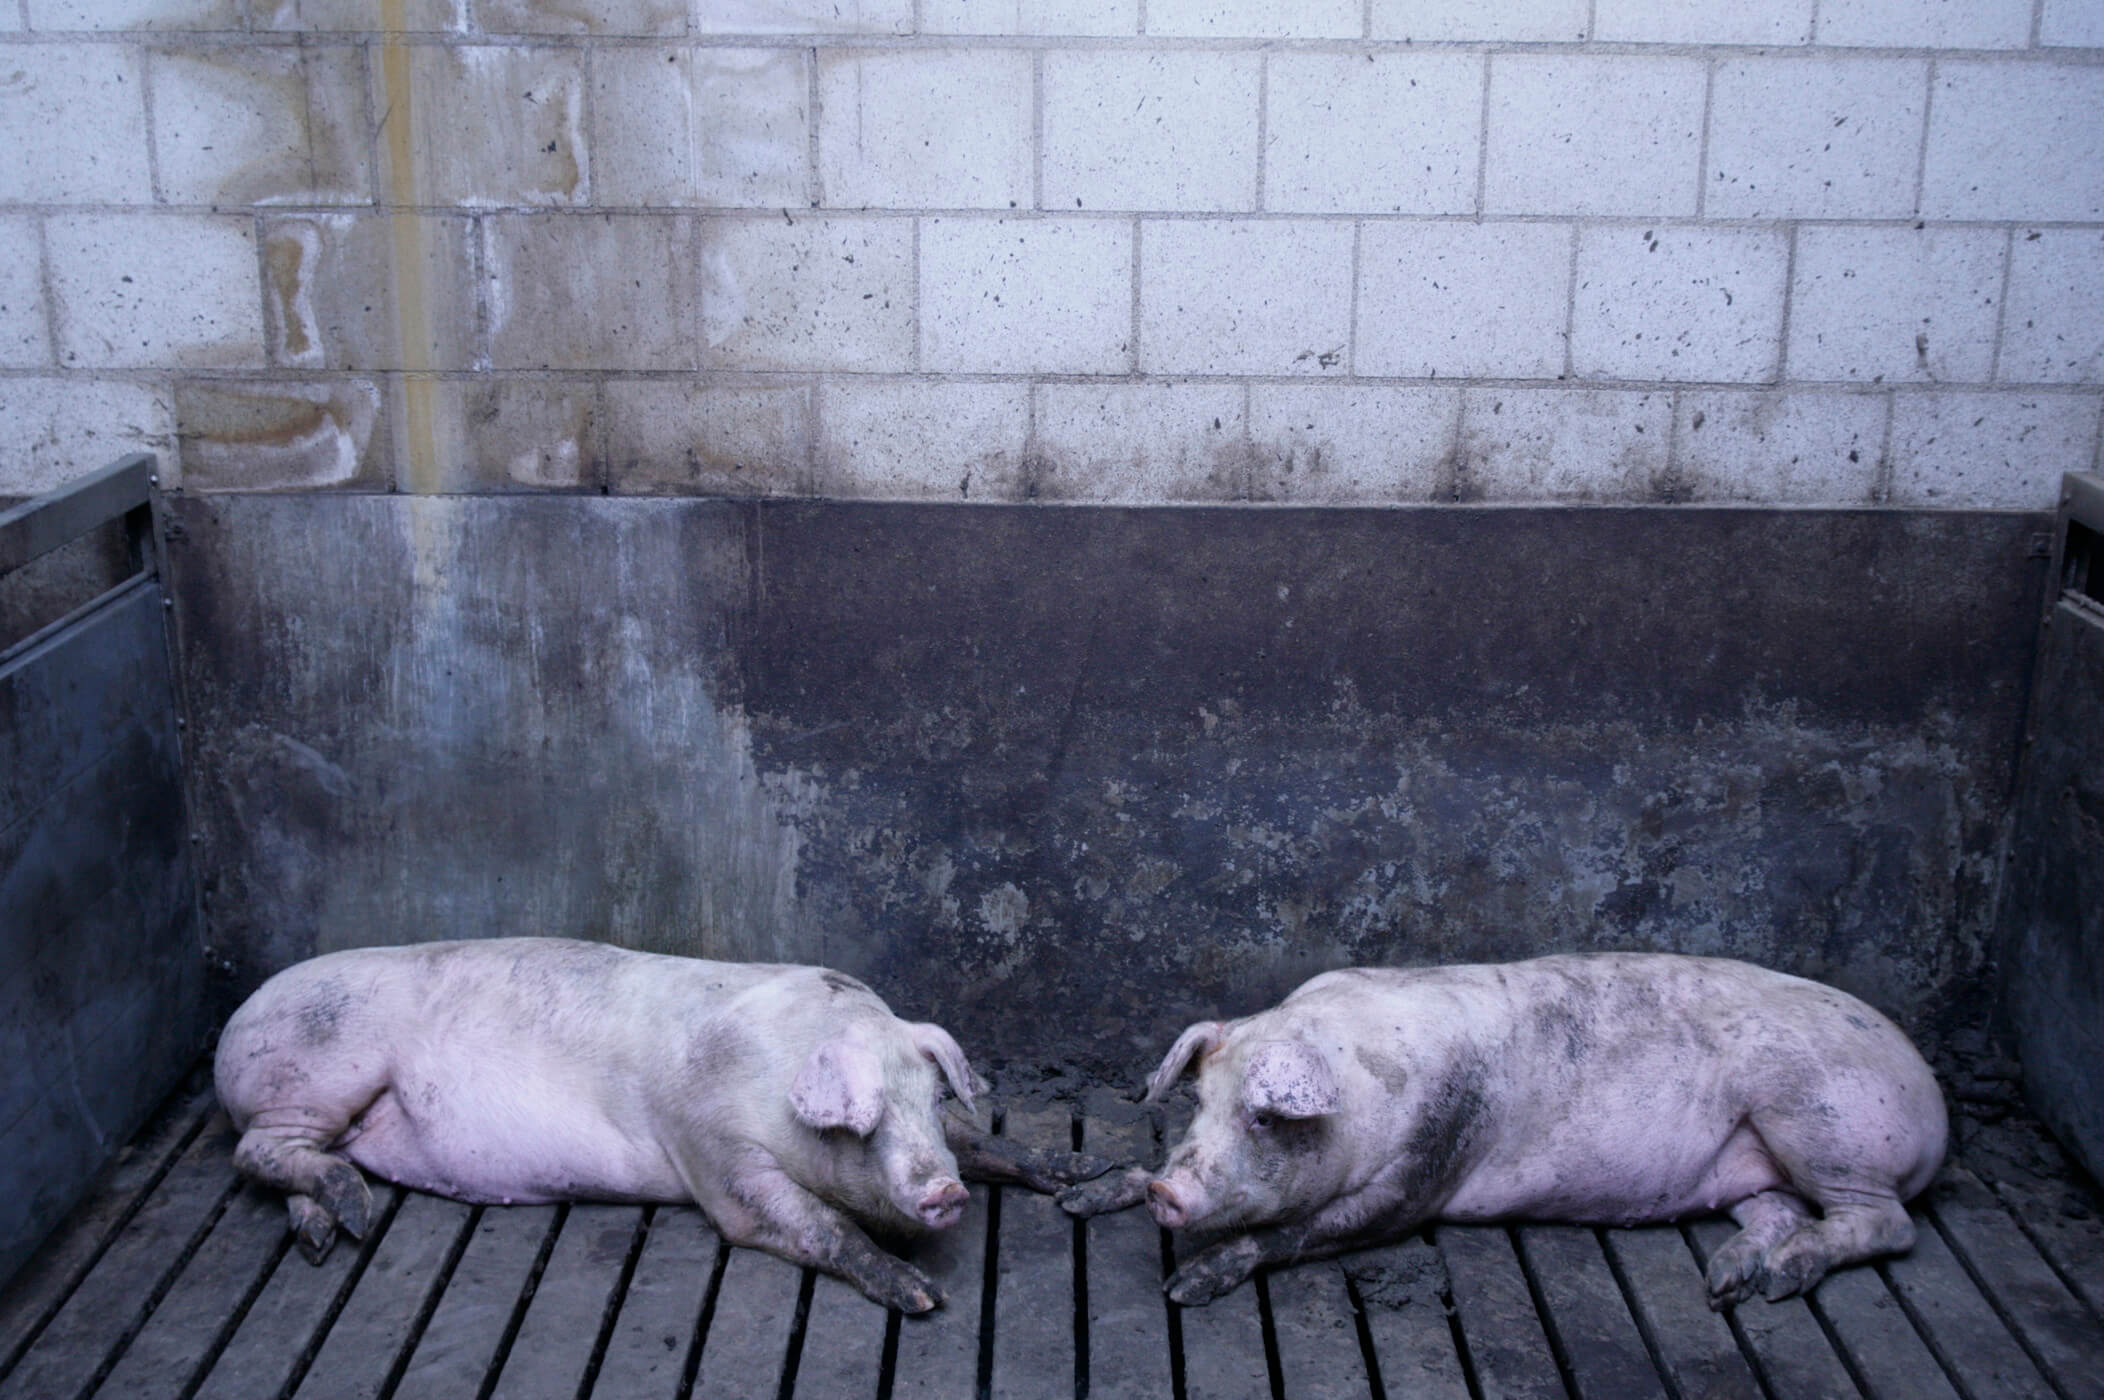 Pigs indoors on slatted floor